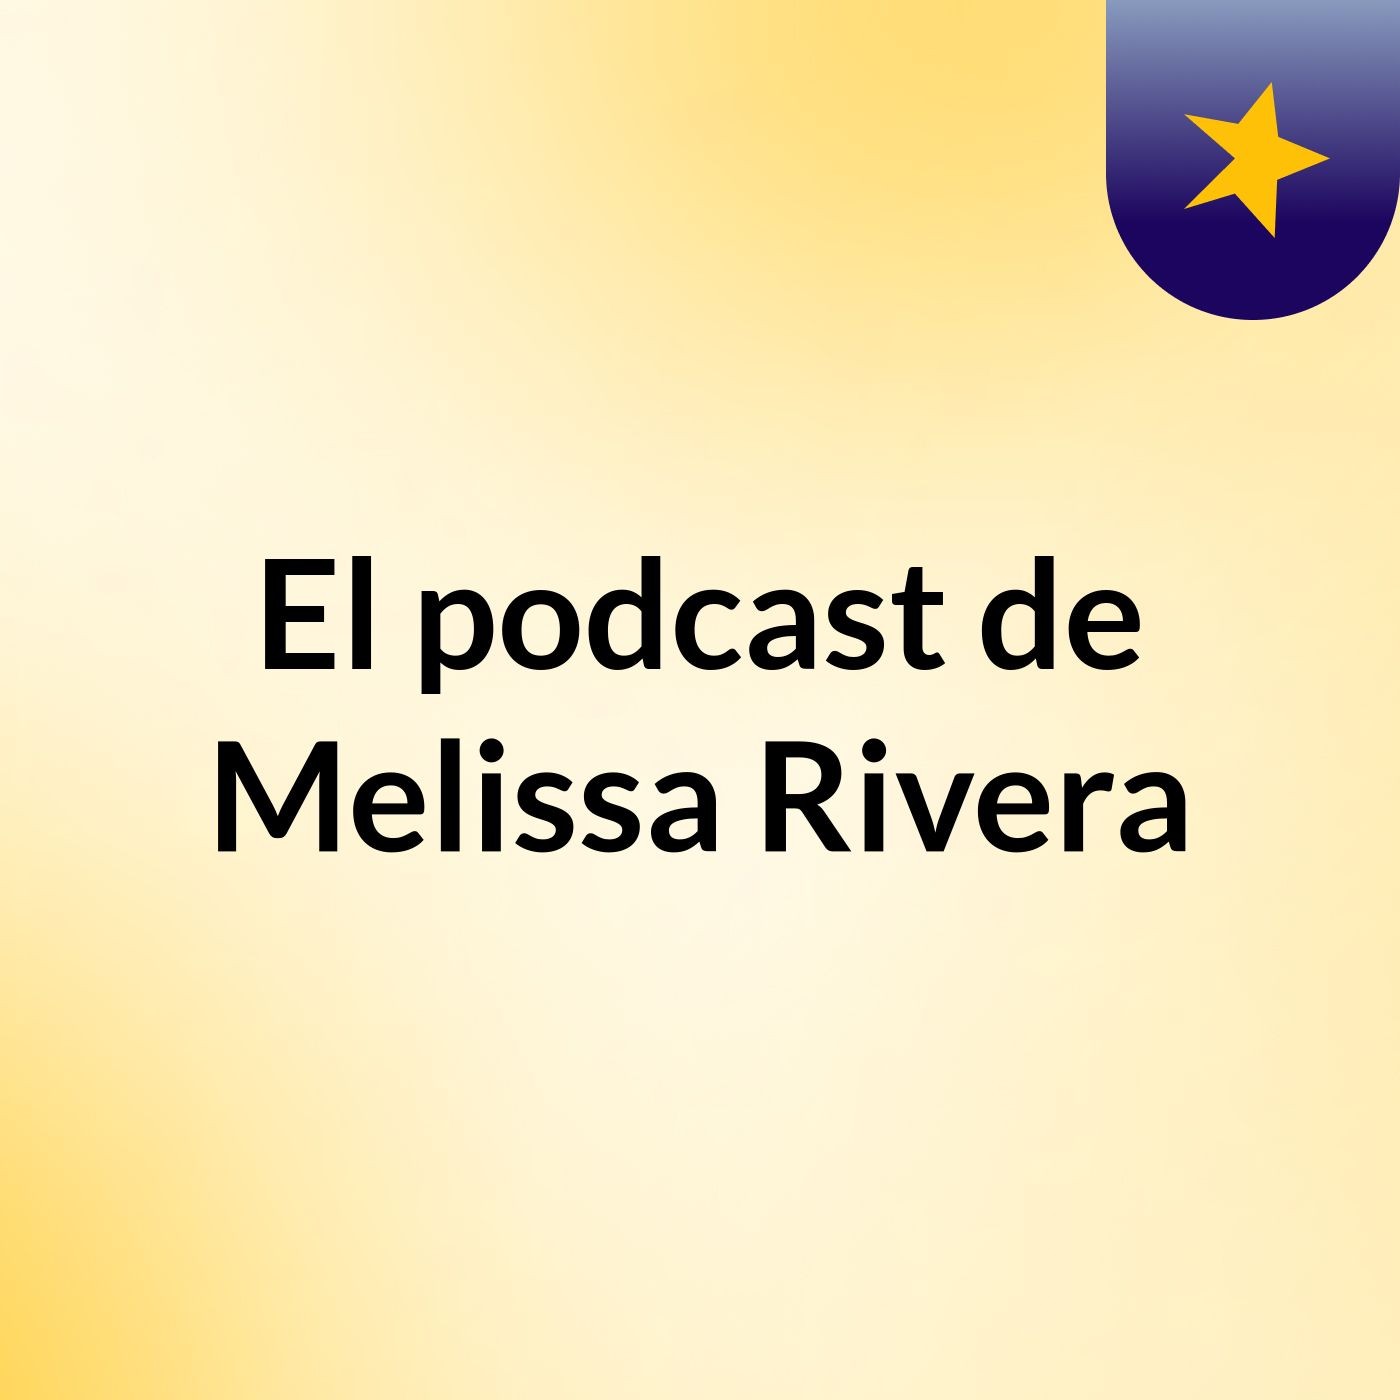 El podcast de Melissa Rivera